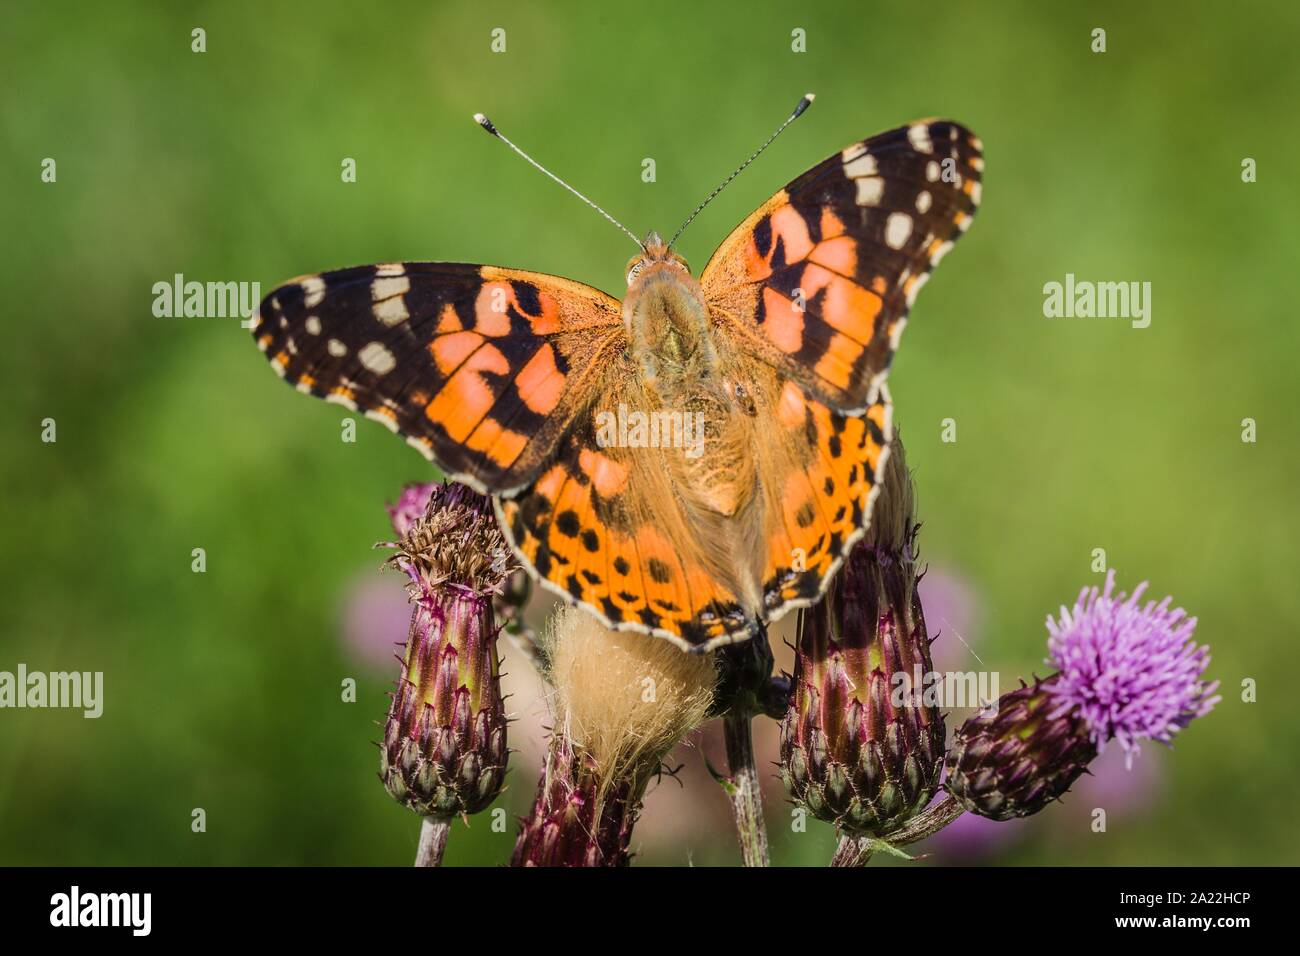 Schließen Sie herauf Bild der bunten Distelfalter Schmetterling mit Flügeln öffnen sitzen auf lila Distel in einer Wiese im Sommer wachsen. Grüner Hintergrund. Stockfoto